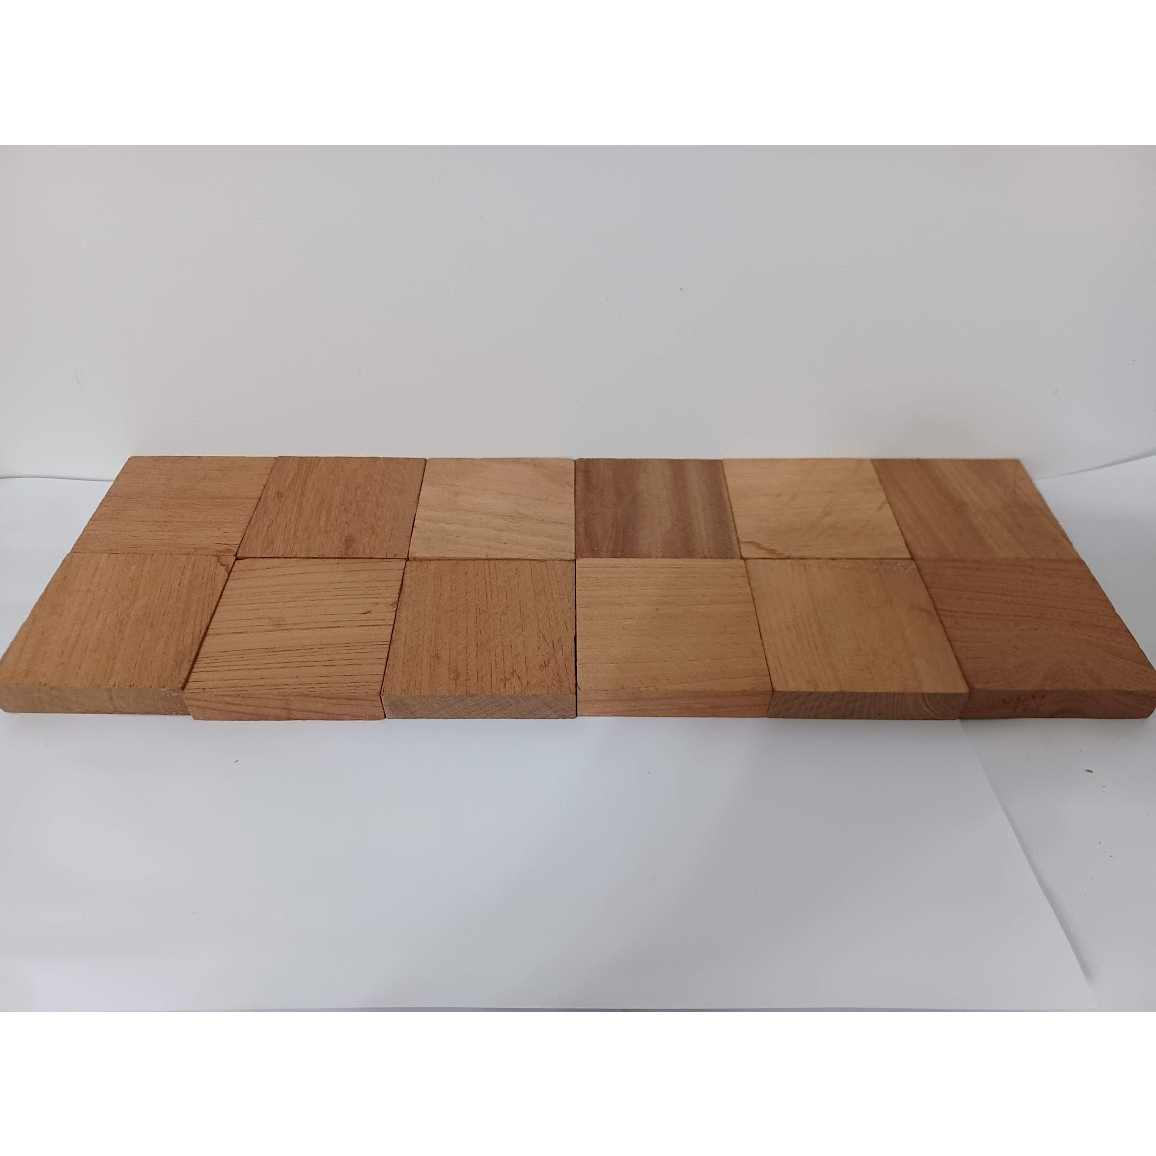 (現木坊)板.635-約.6/6/1.3cm台灣櫸木(國寶級雞油木)原木塊單塊